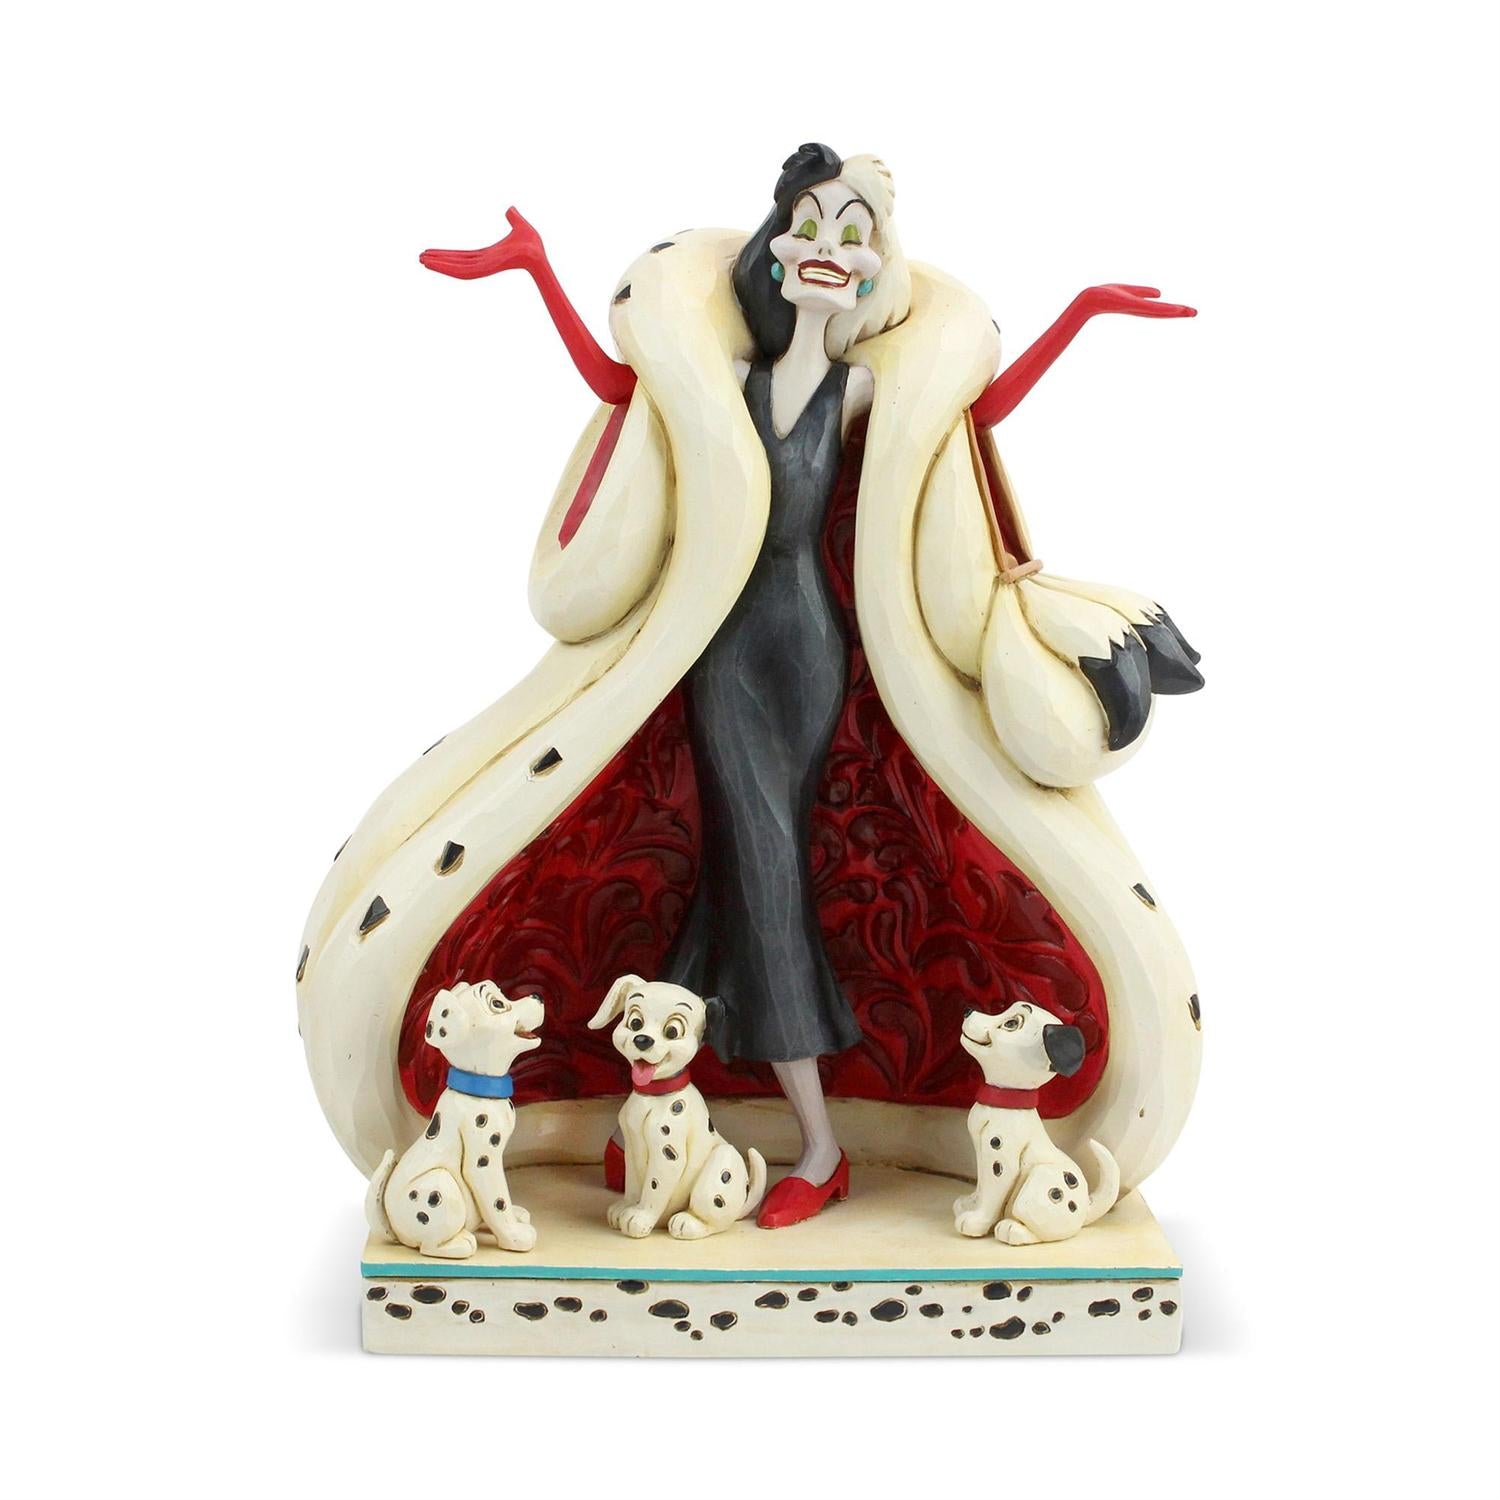 Disney Traditions by Jim Shore “The Cute and the Cruel”, Cruella DeVil